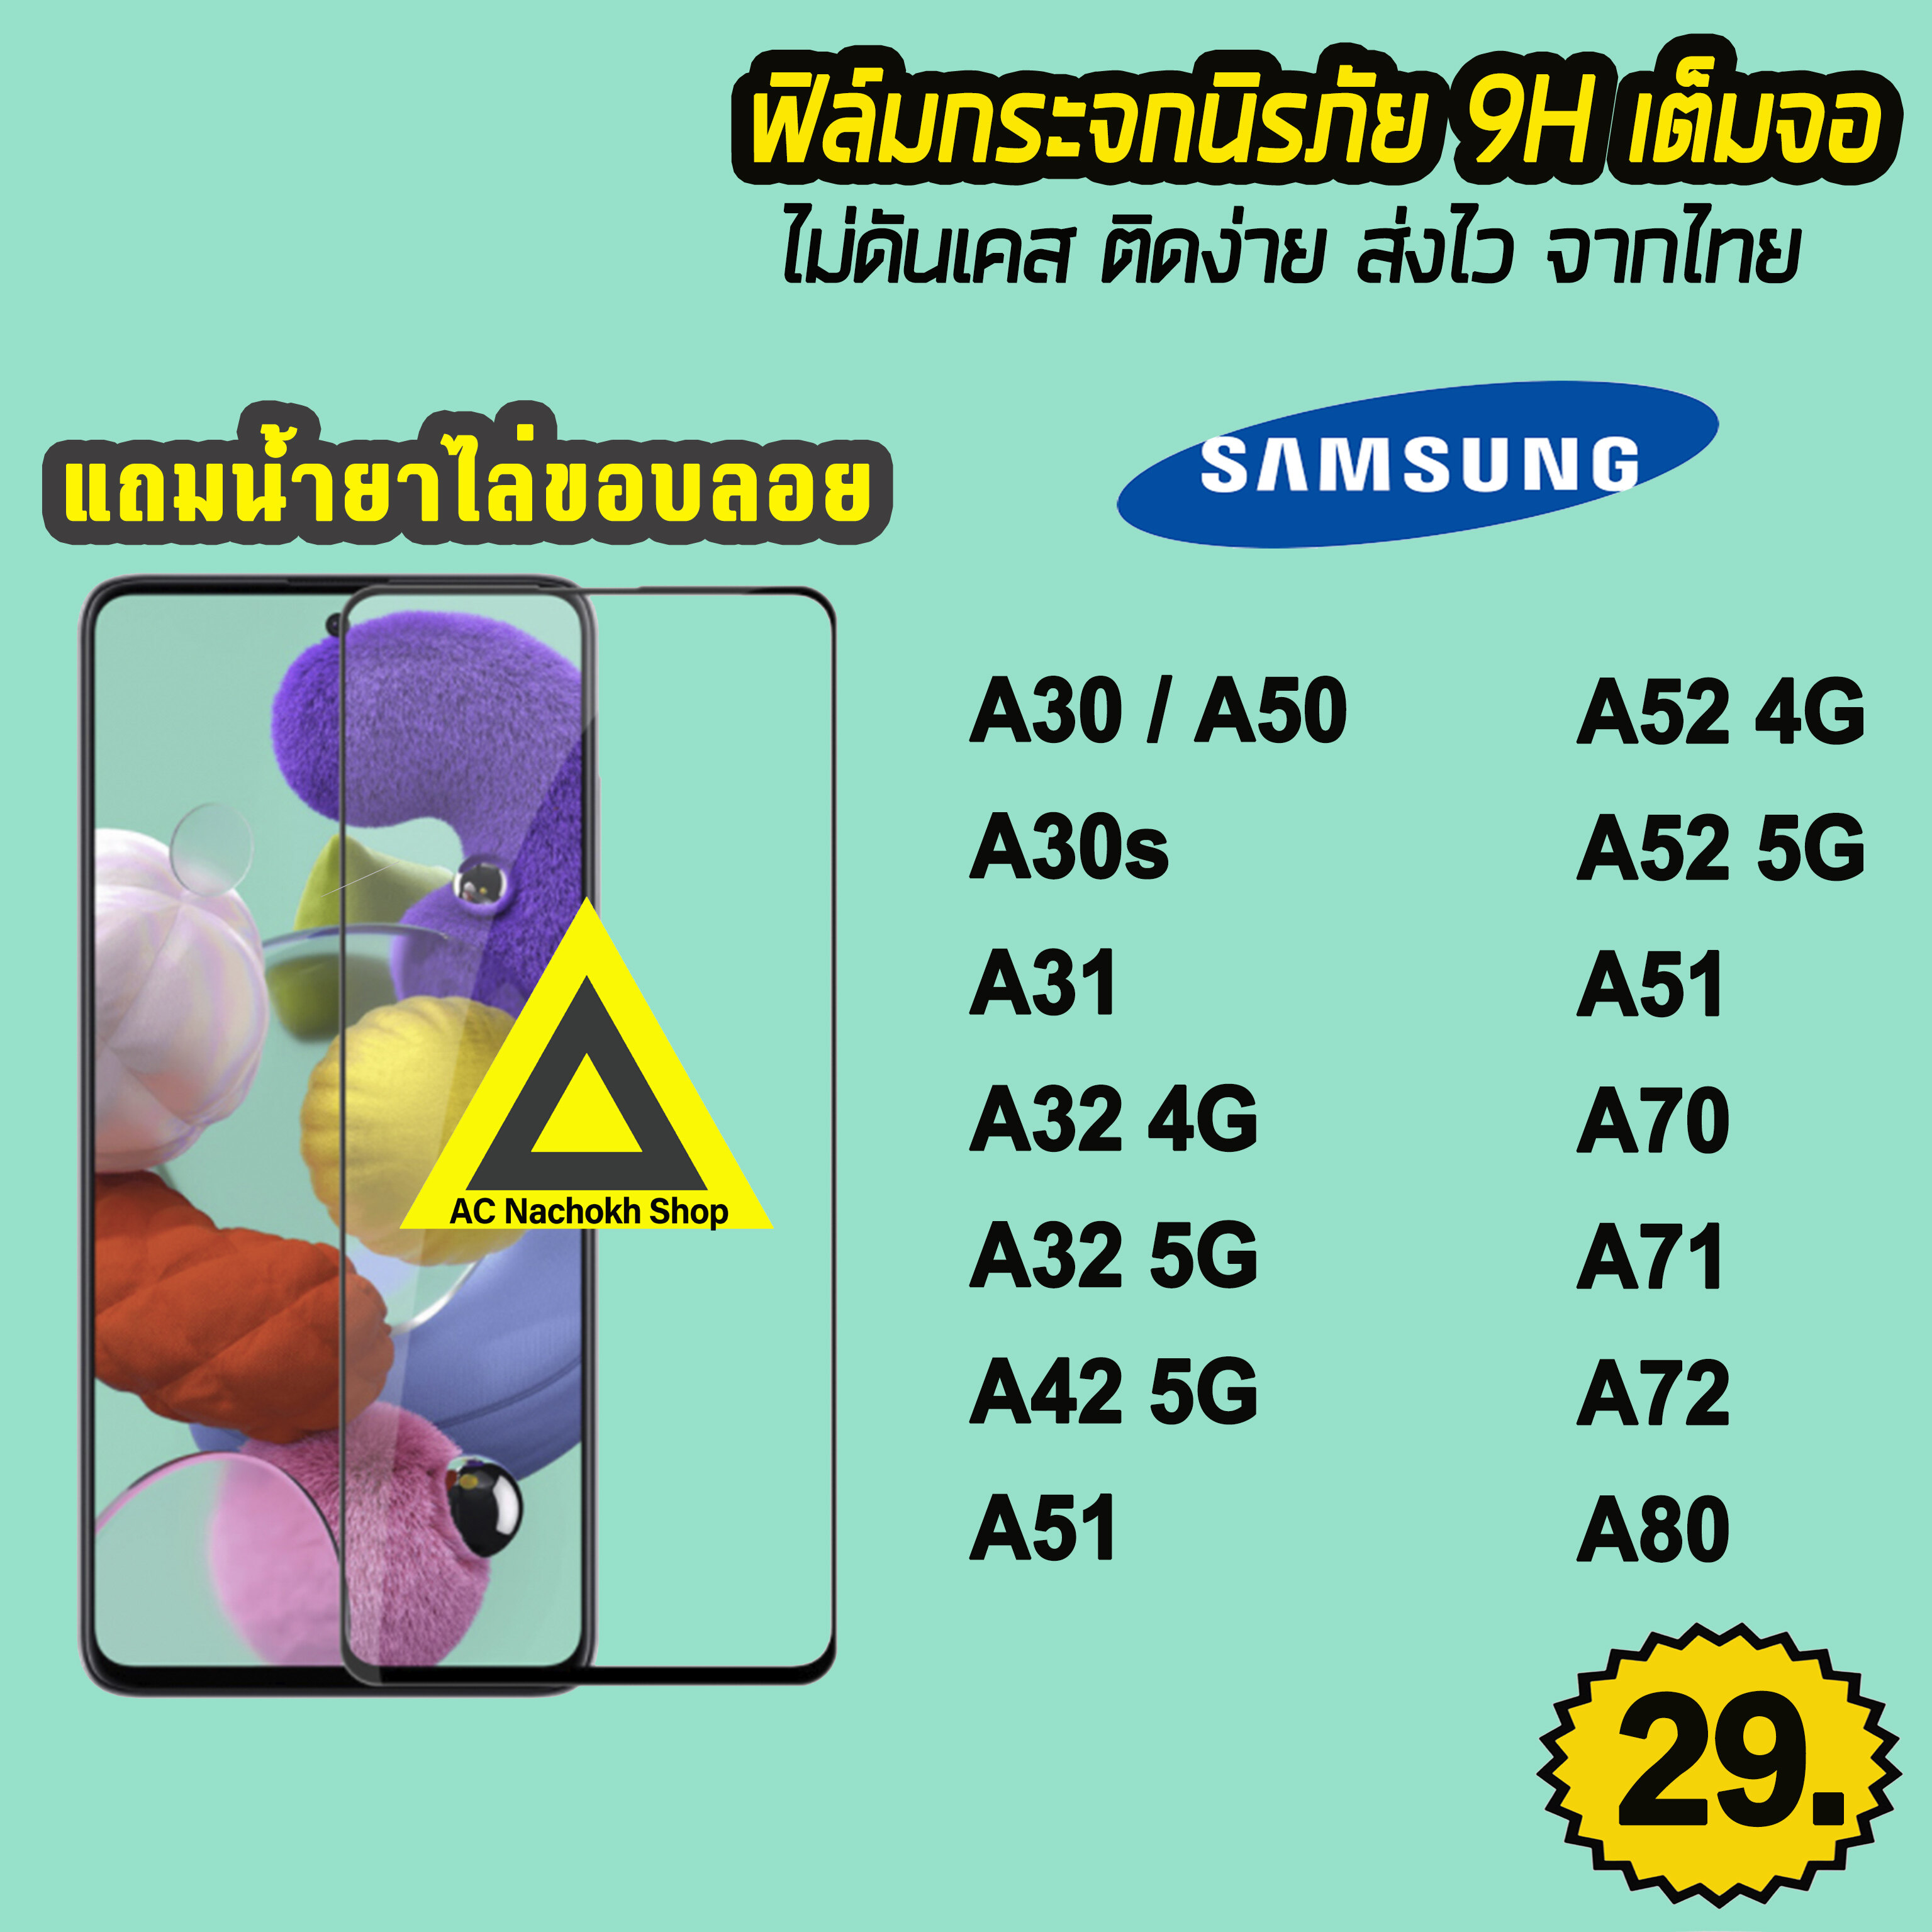 ? สินค้าพร้อมส่ง จากไทย ฟิล์มกระจก 9D กันรอยหน้าจอ แบบเต็มจอใส Samsung A30 A30s A31 A32 A42 A50 A50s A51 A52 A70 A71 A72 A80 9H